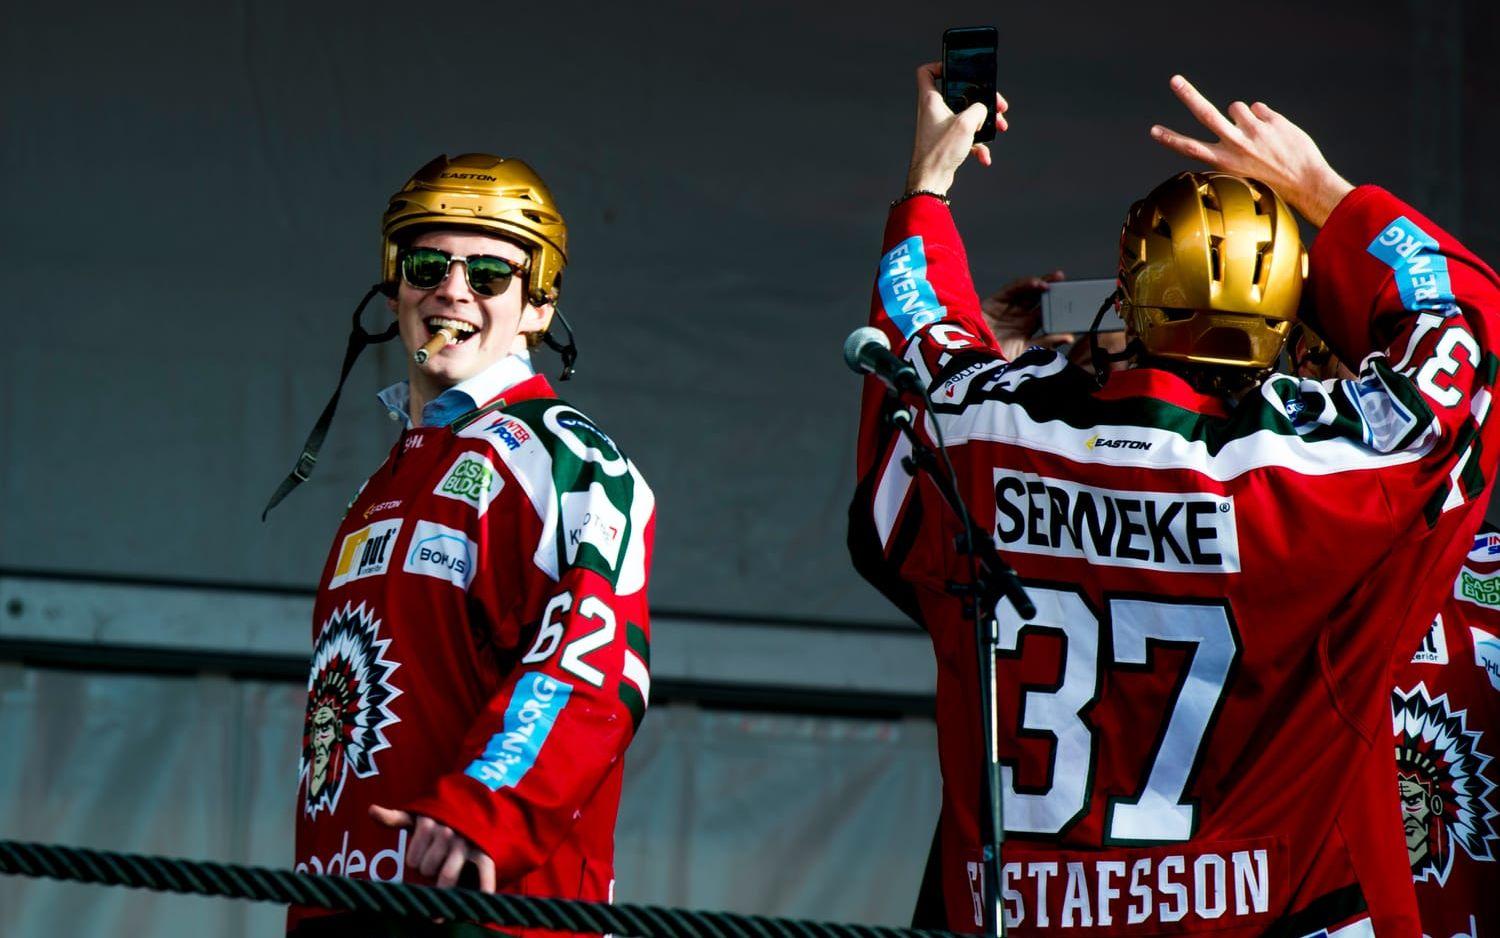 Då: Artturi Lehkonen gjorde en bra säsong i grundserien för att sedan blomma ut totalt i slutspelet och slå Daniel Alfredssons poängrekord i Frölunda. Bild: Bildbyrån